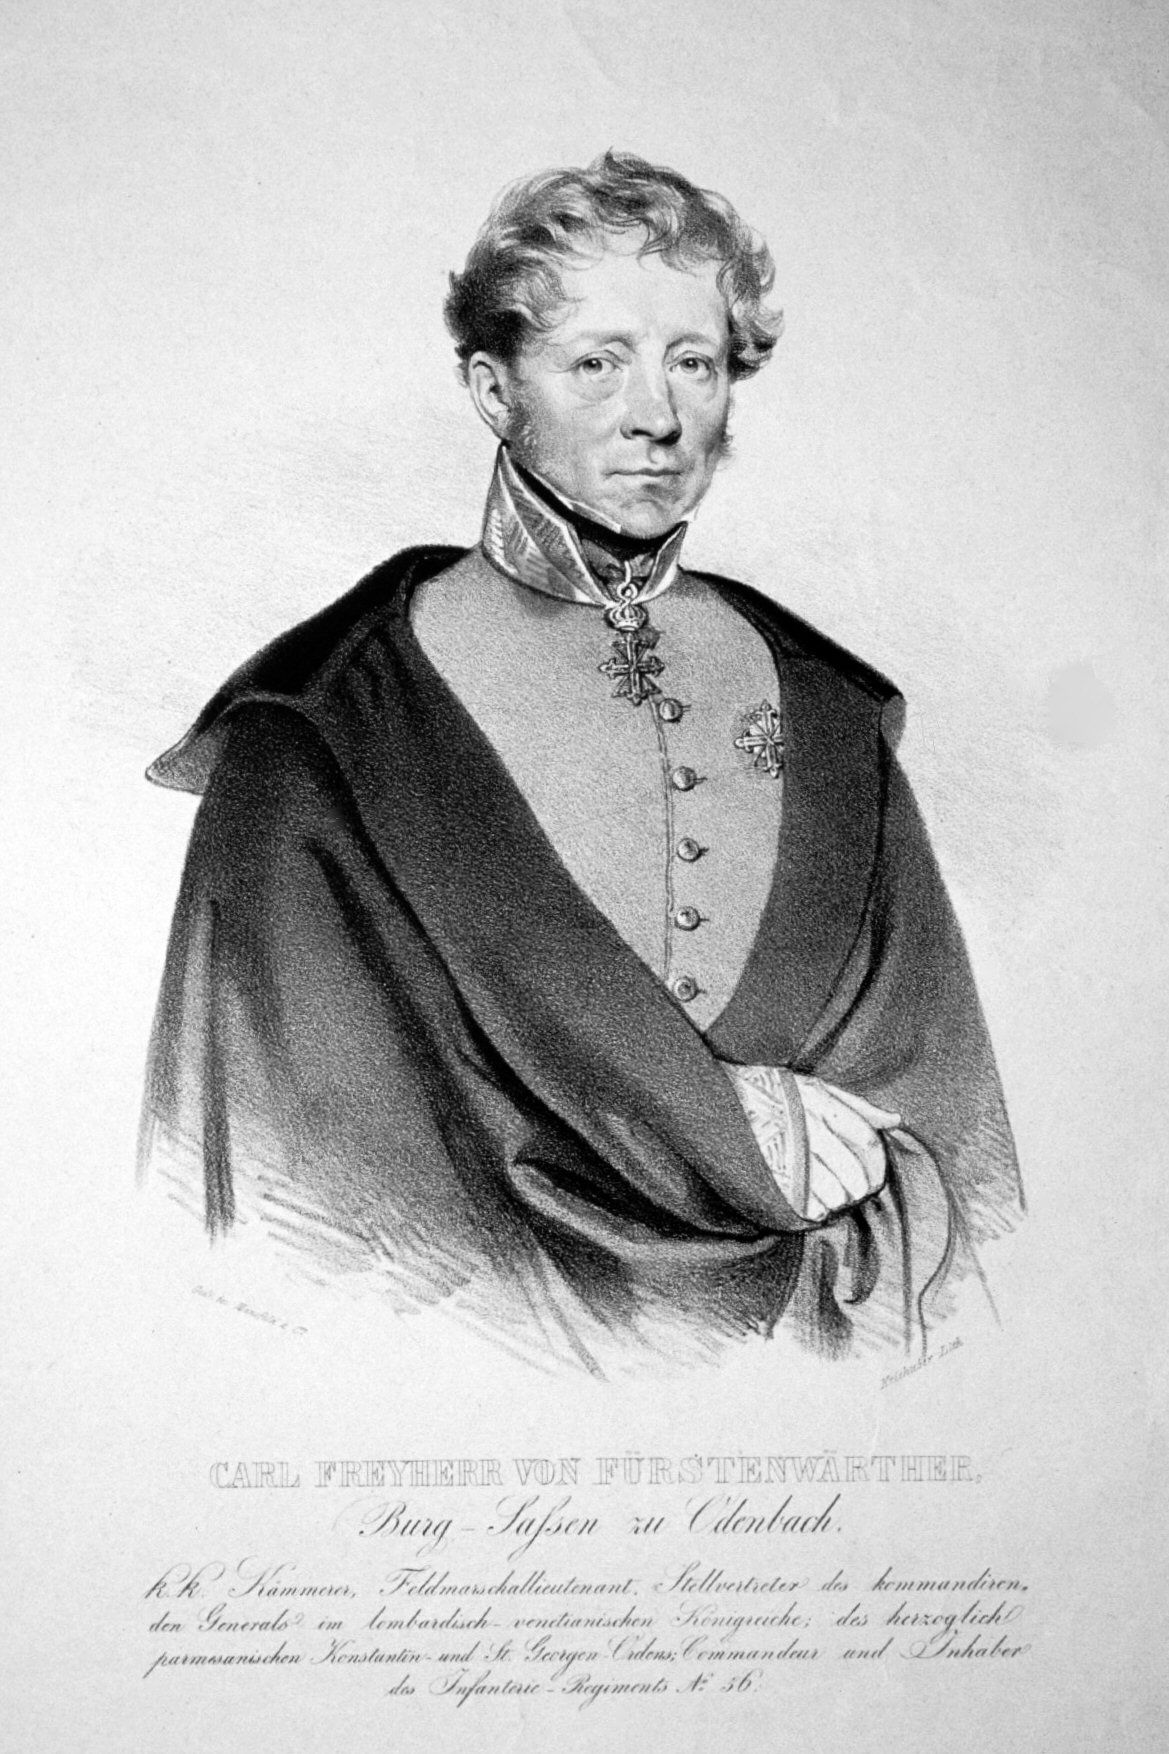 Friedrich 'Karl Ludwig von Fürstenwärther